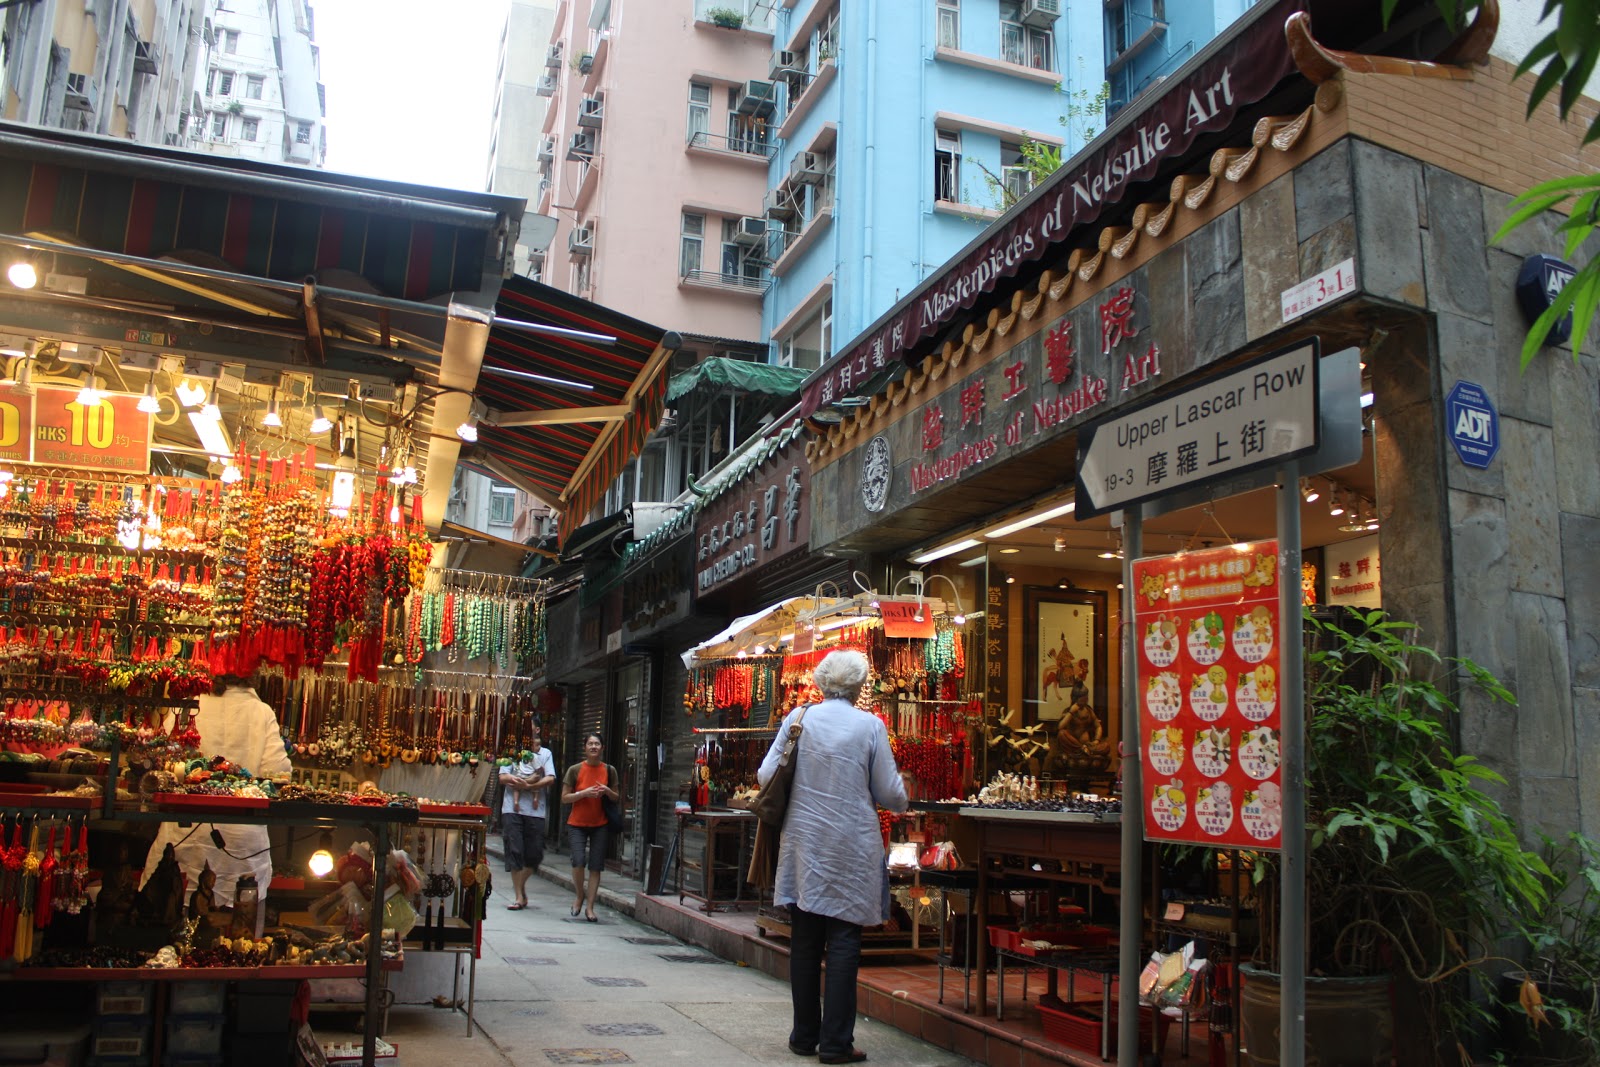 Lascar Row, Hong Kong 